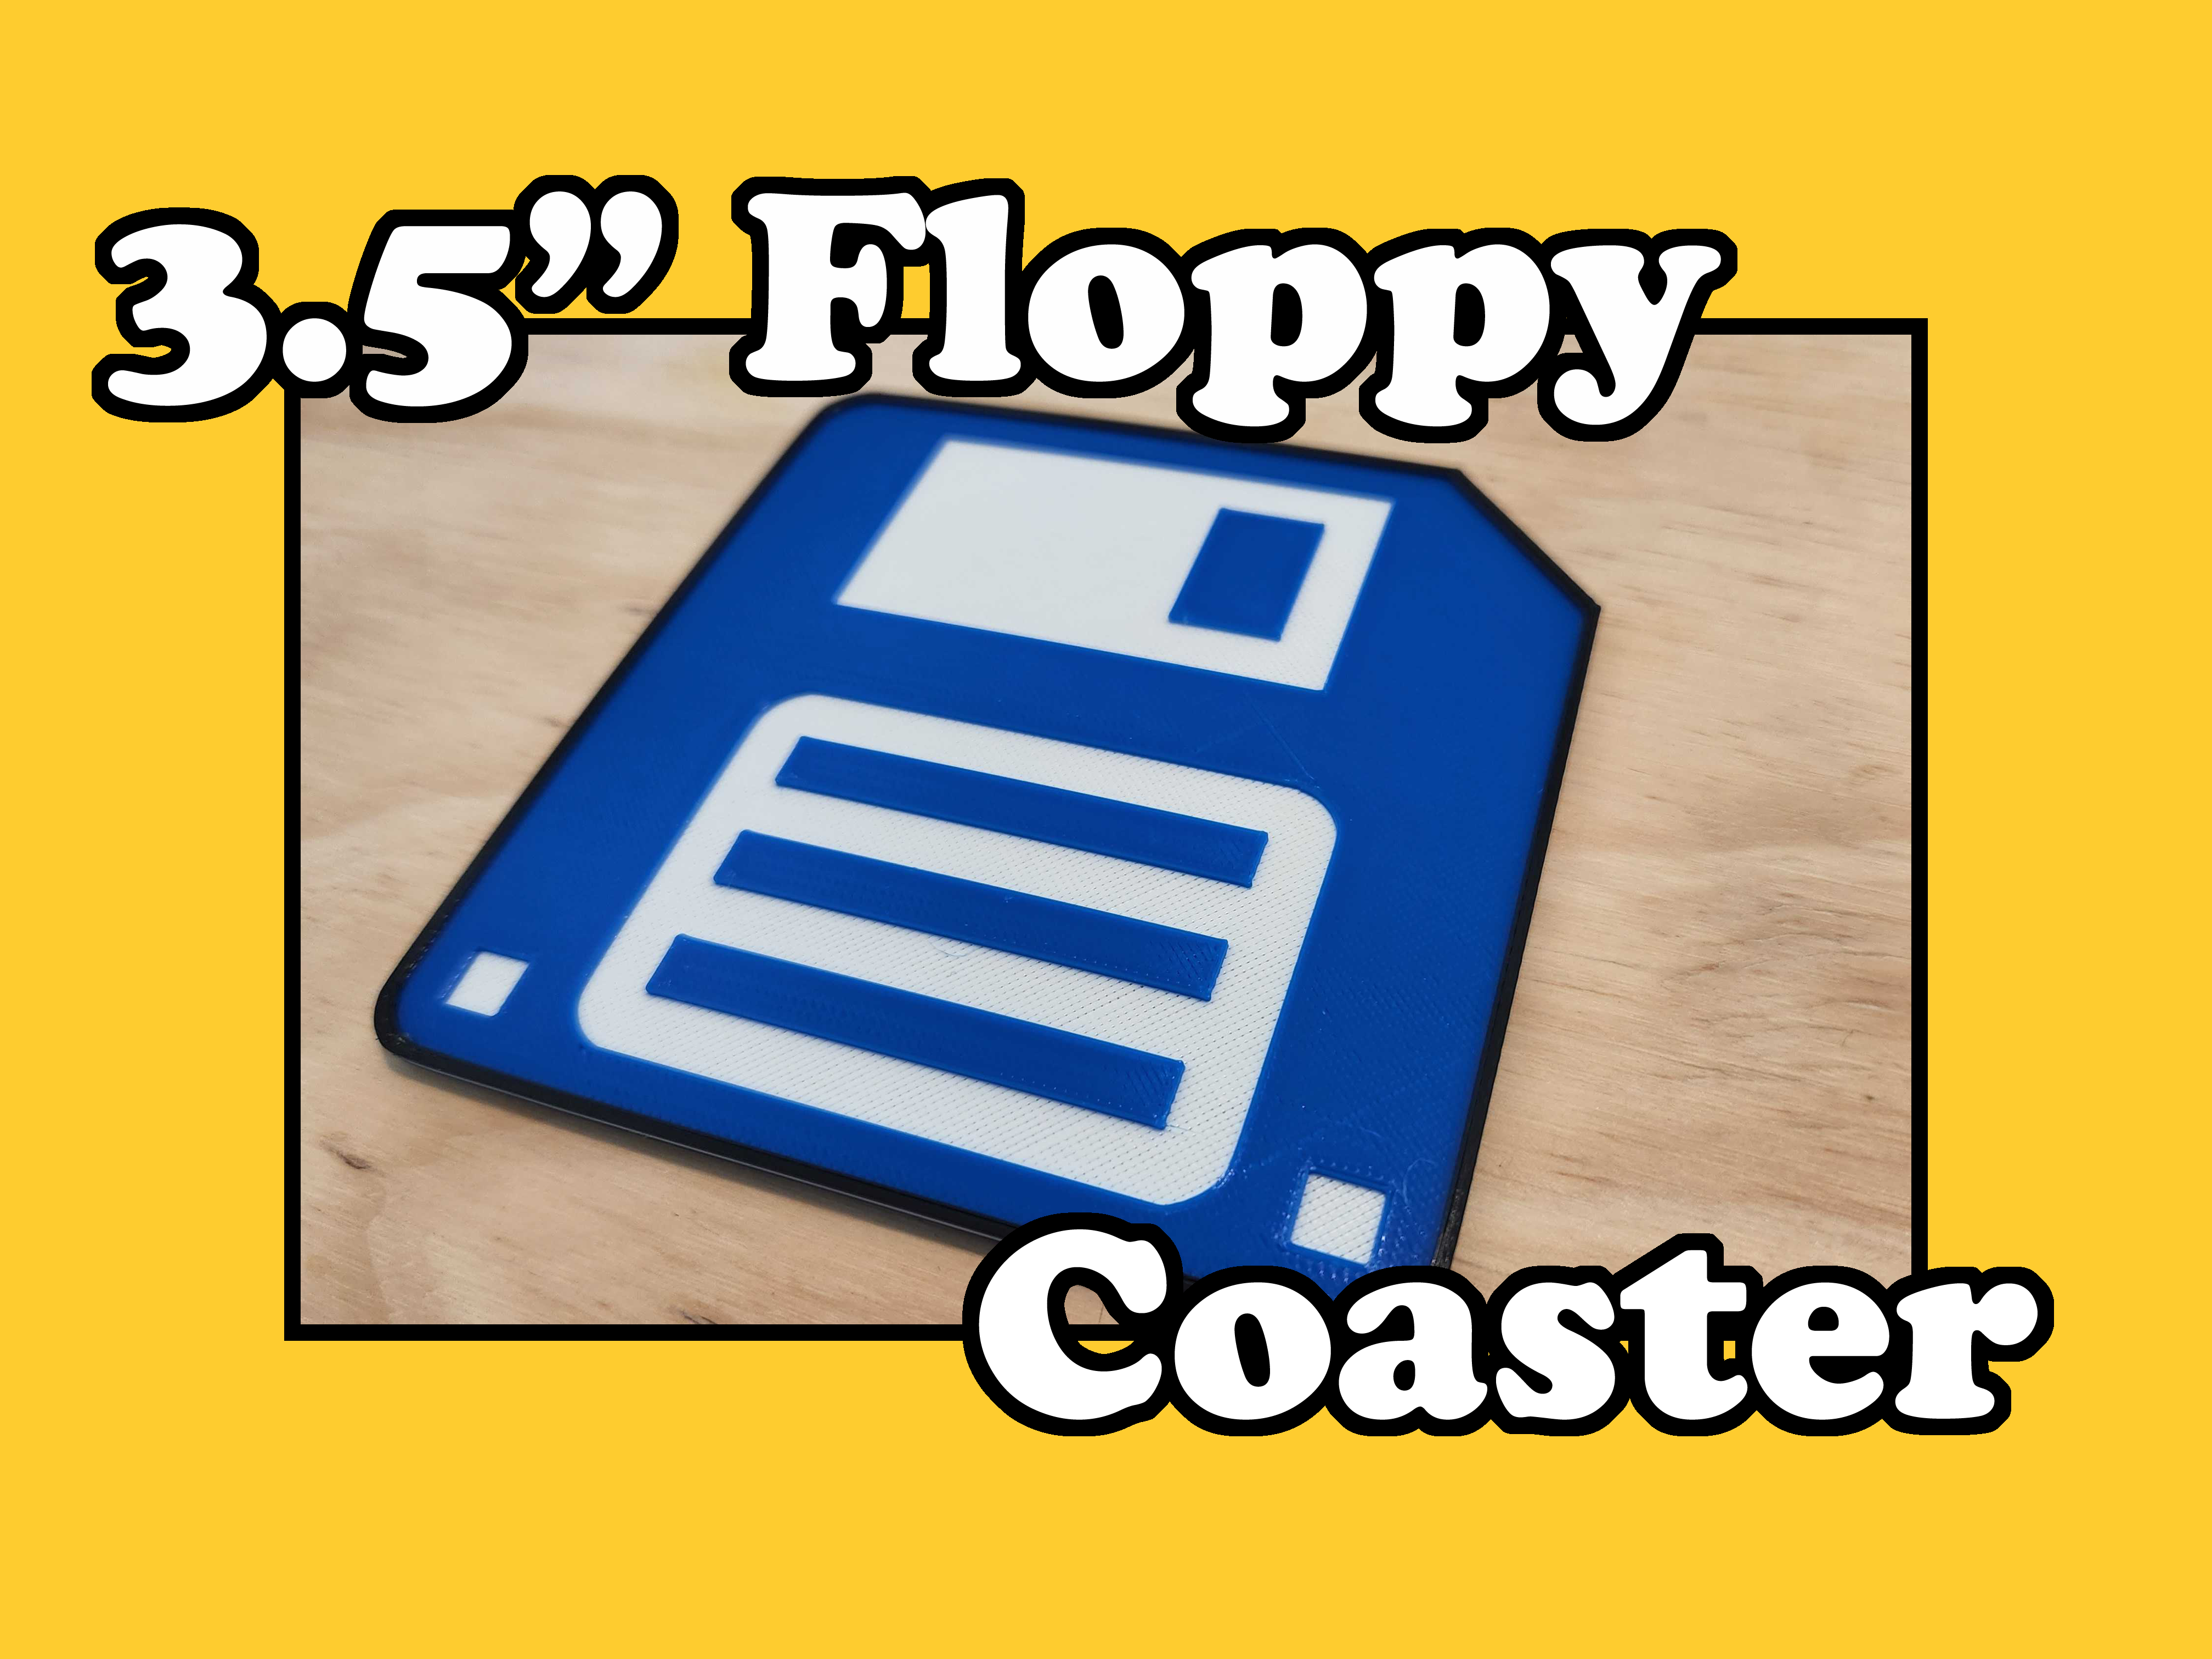 3.5" Floppy Coaster